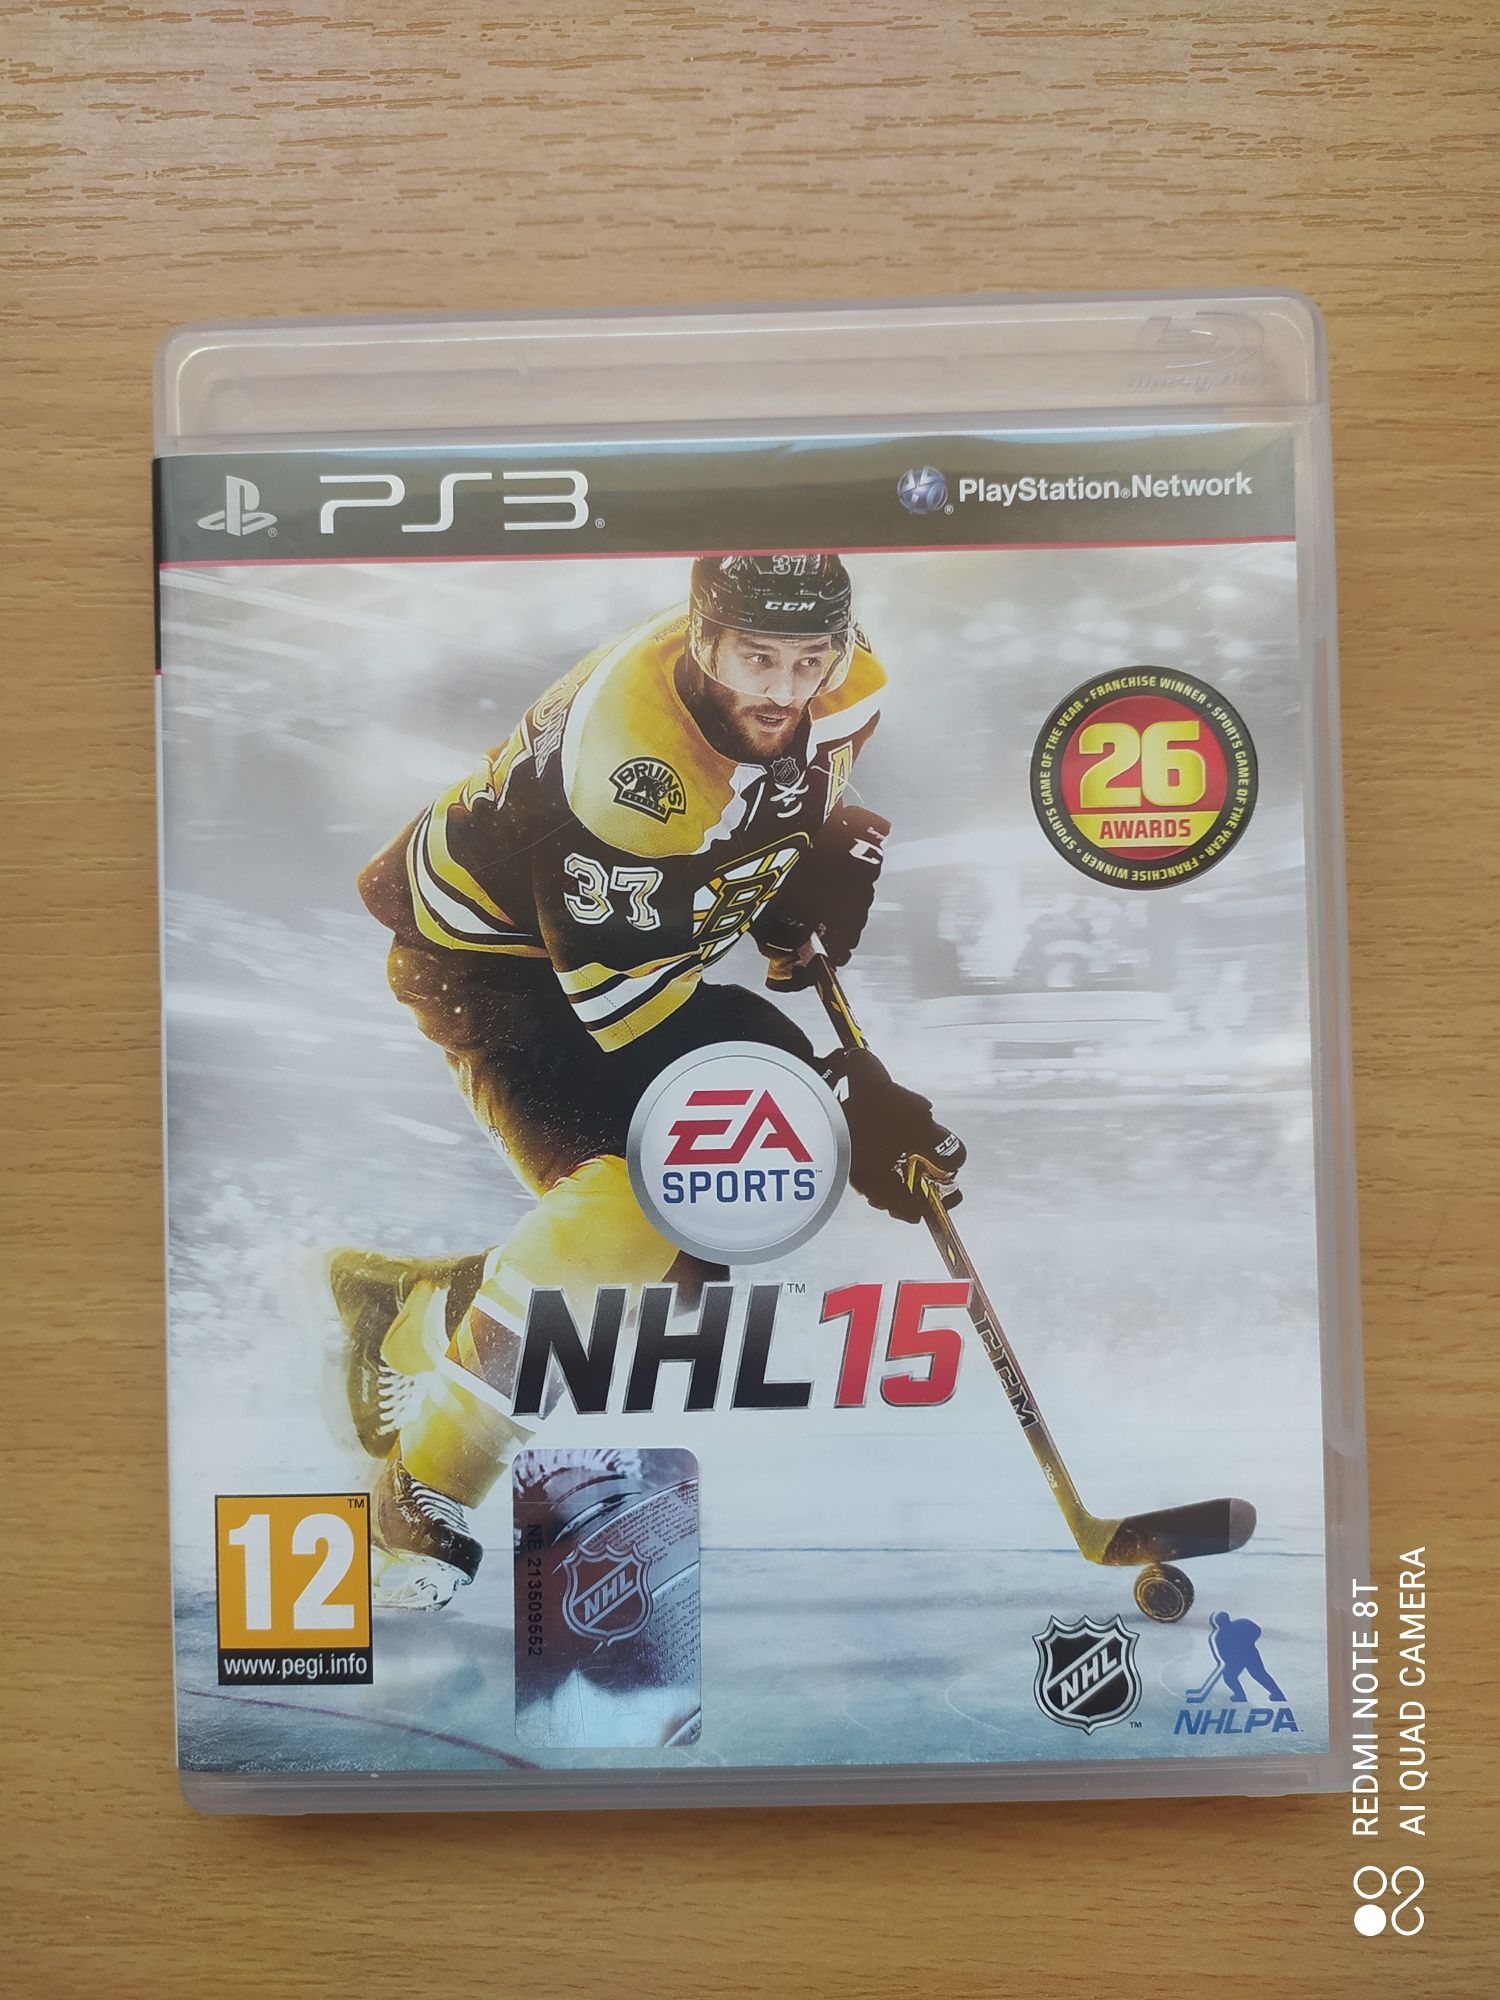 NHL 15 na PS3,, stan bdb, możliwa wysyłka